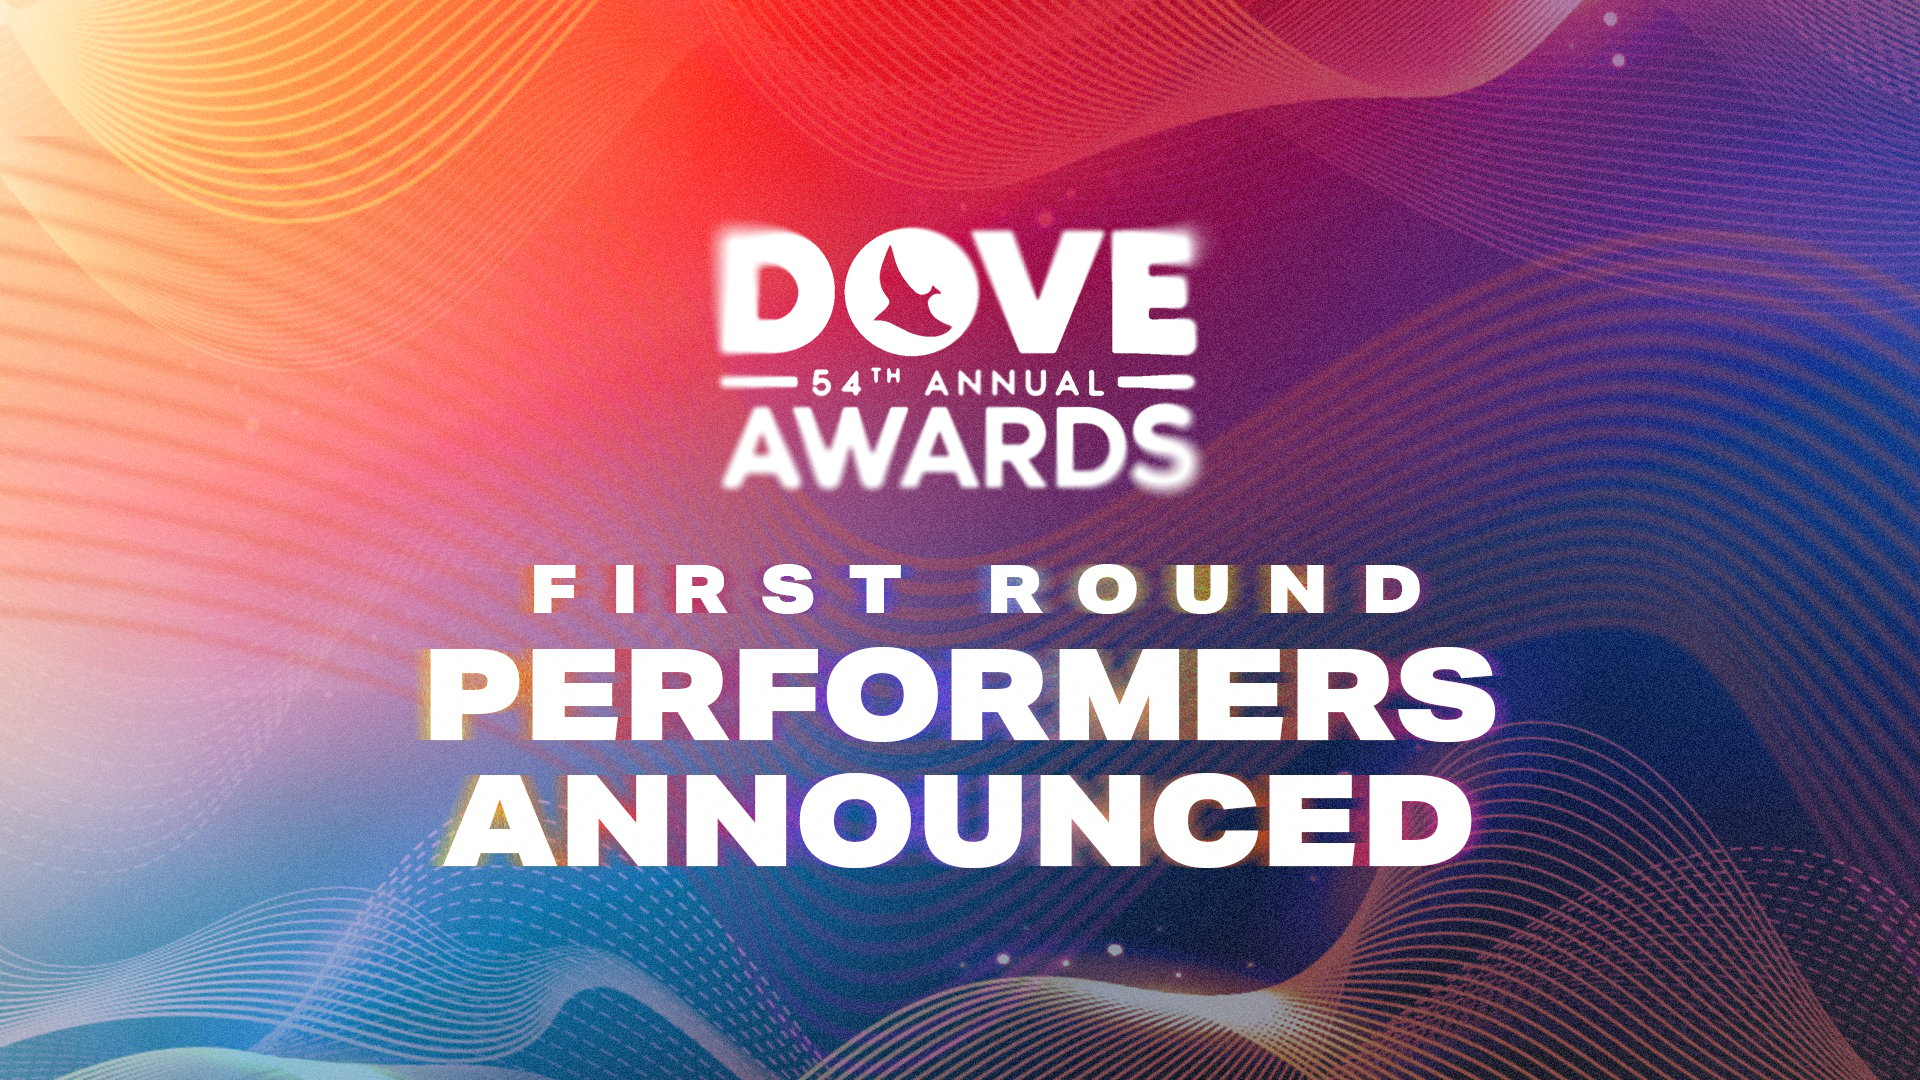 La 54ª Edición De Los Dove Awards De La GMA Anuncia La Primera Ronda De Artistas Participantes